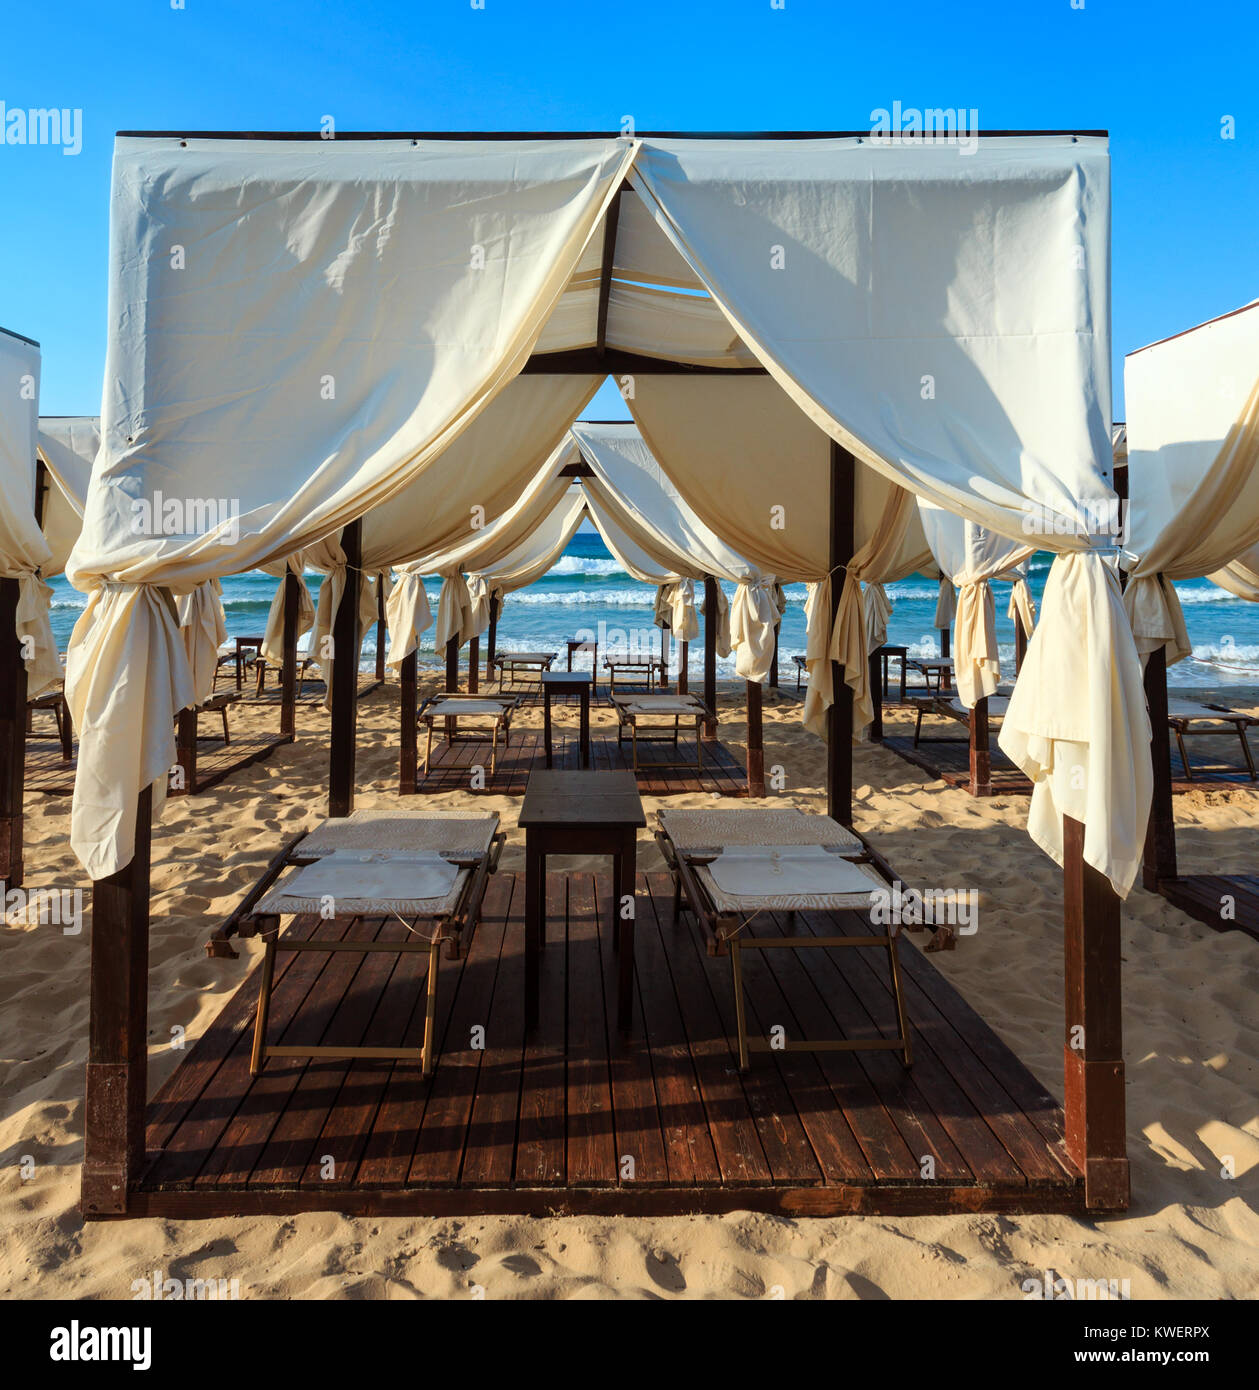 Les auvents tentes de luxe plage paradis matin sur une plage de sable blanc ( Salento, Pouilles, Italie du sud).La plus belle plage de sable fin de la mer des Pouilles. Banque D'Images